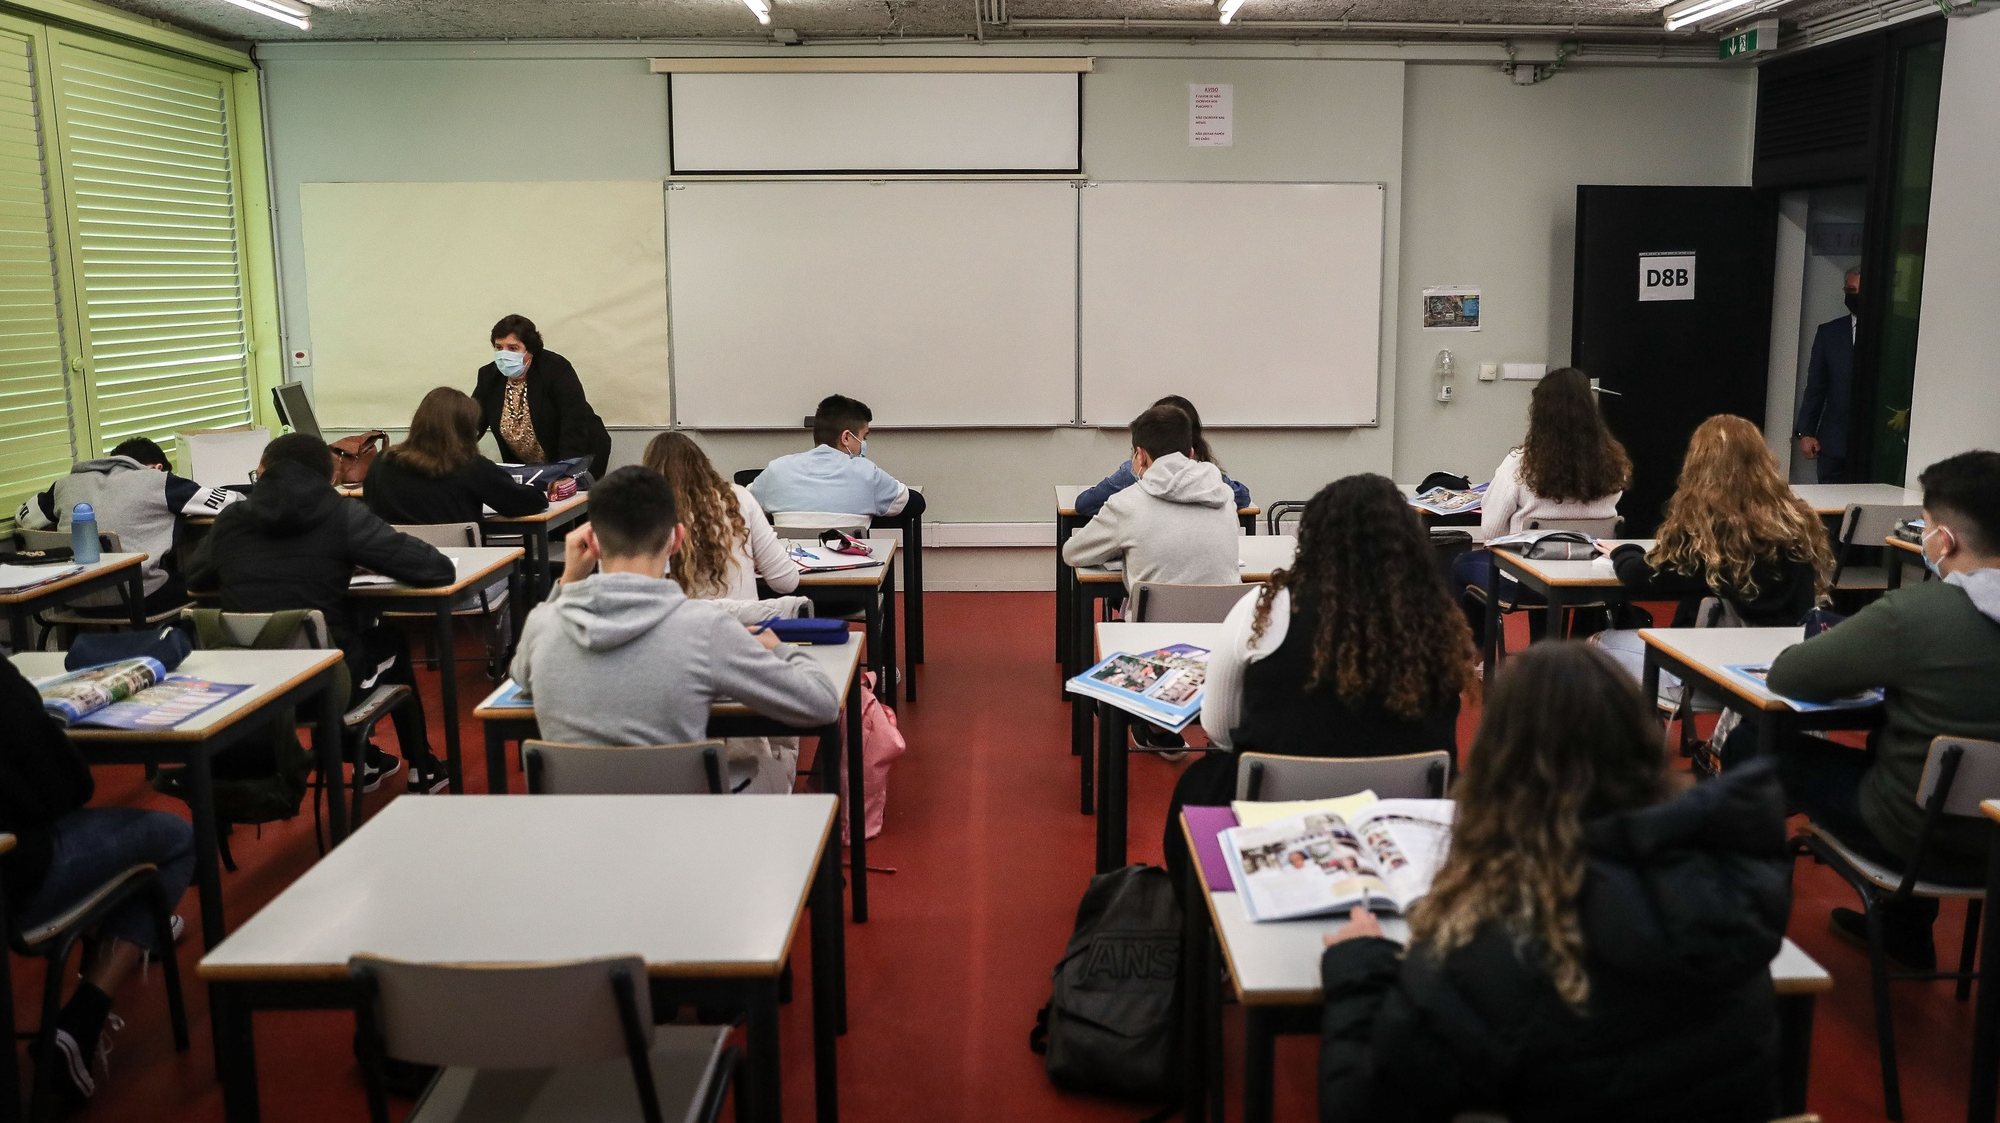 Alunos do agrupamento de escolas D. Dinis no regresso às aulas no âmbito do desconfinamento devido à pandemia de covid-19, em Lisboa, 5 de abril de 2021. MÁRIO CRUZ/LUSA